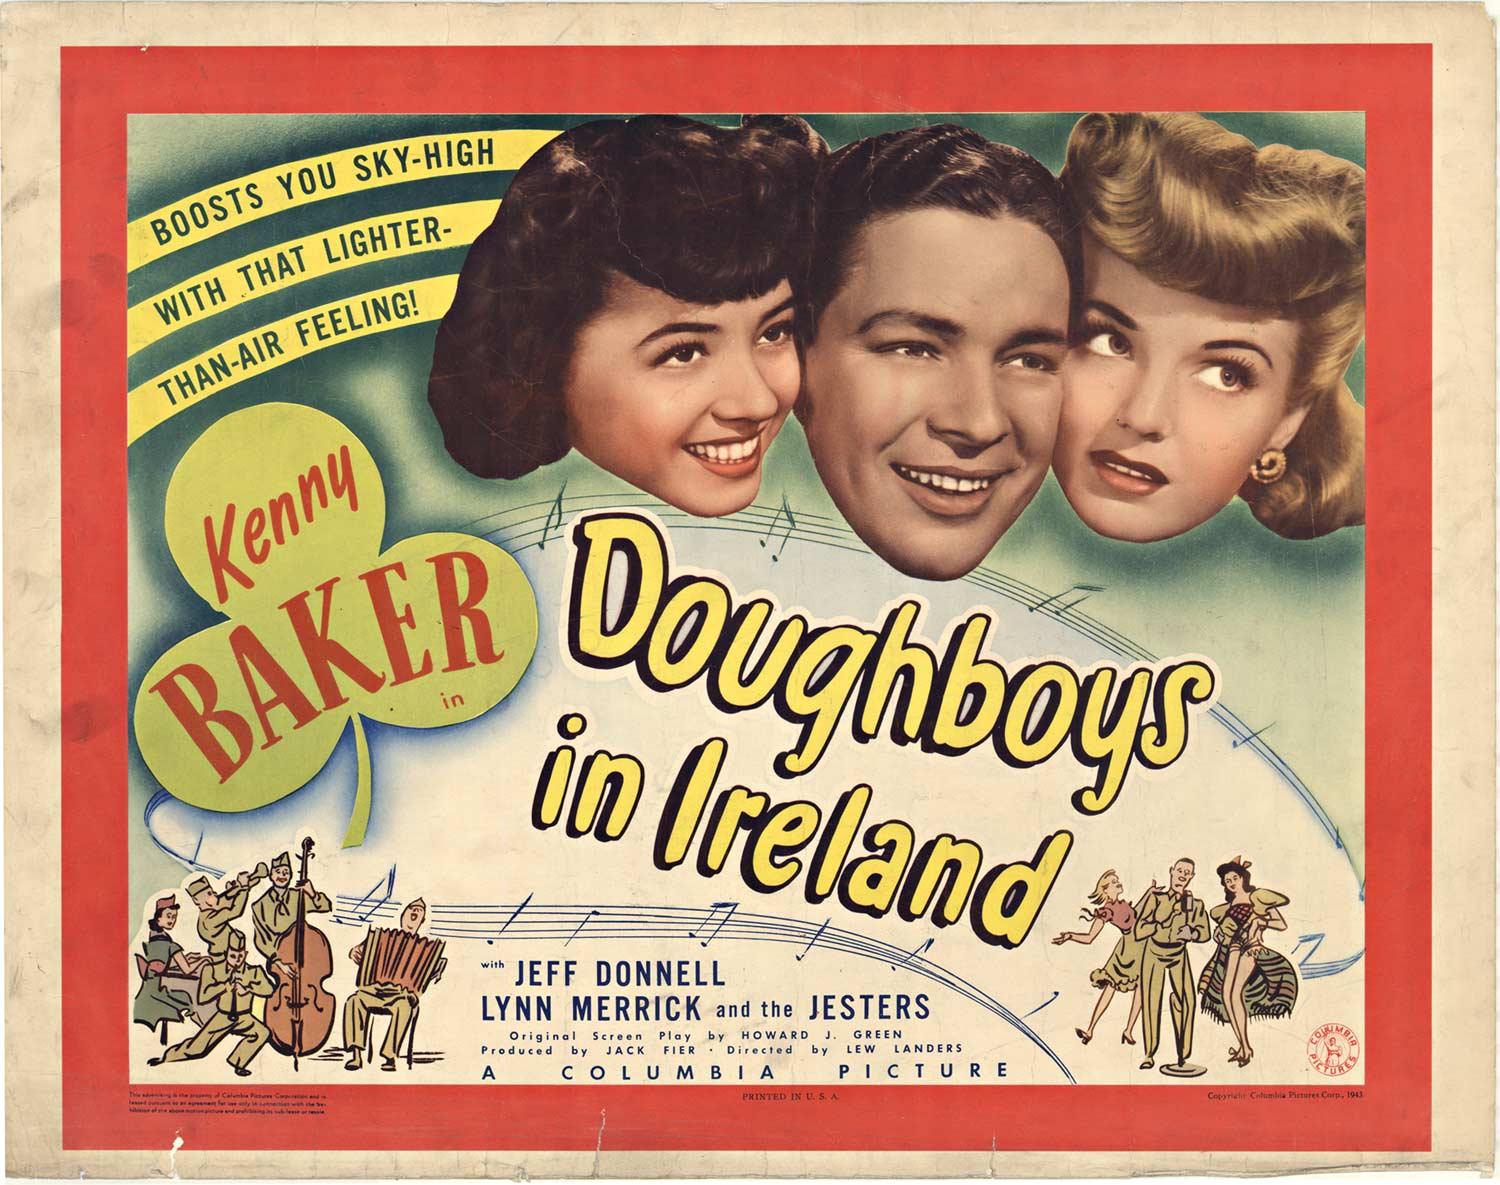 Unknown Print – Original-Vintage-Filmplakat „Doughboys in Ireland“ von 1943, halbseitig